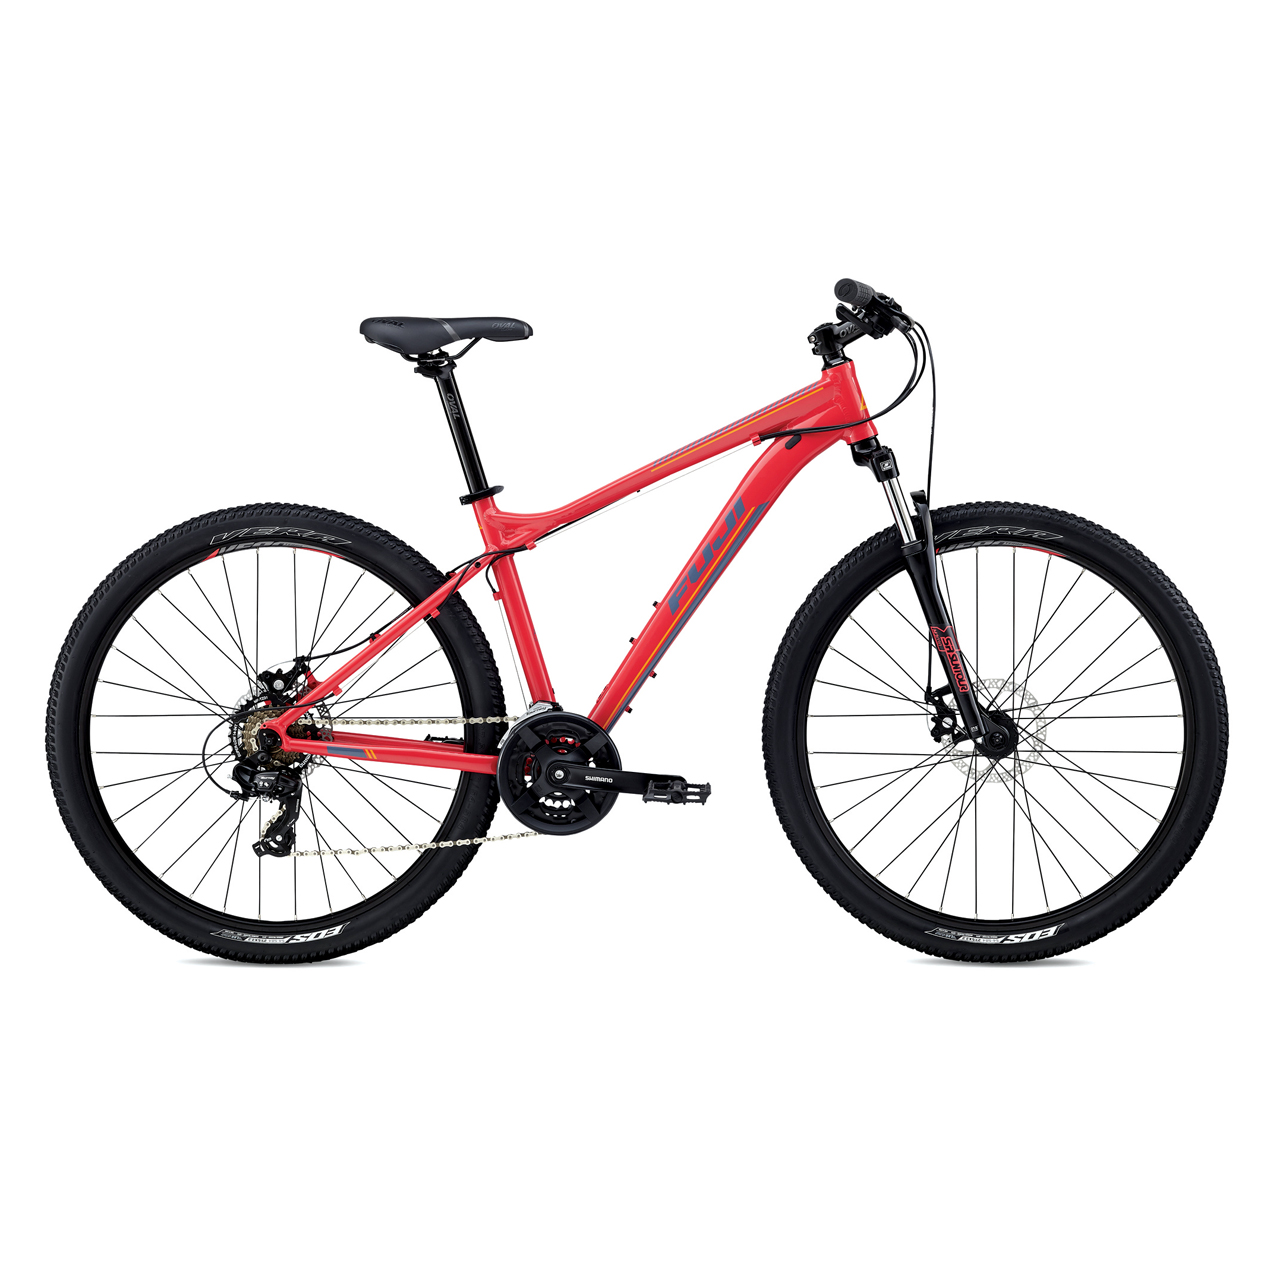 دوچرخه کوهستان بانوان فوجی Addy 1.9 سایز 27.5 رنگ قرمز2018